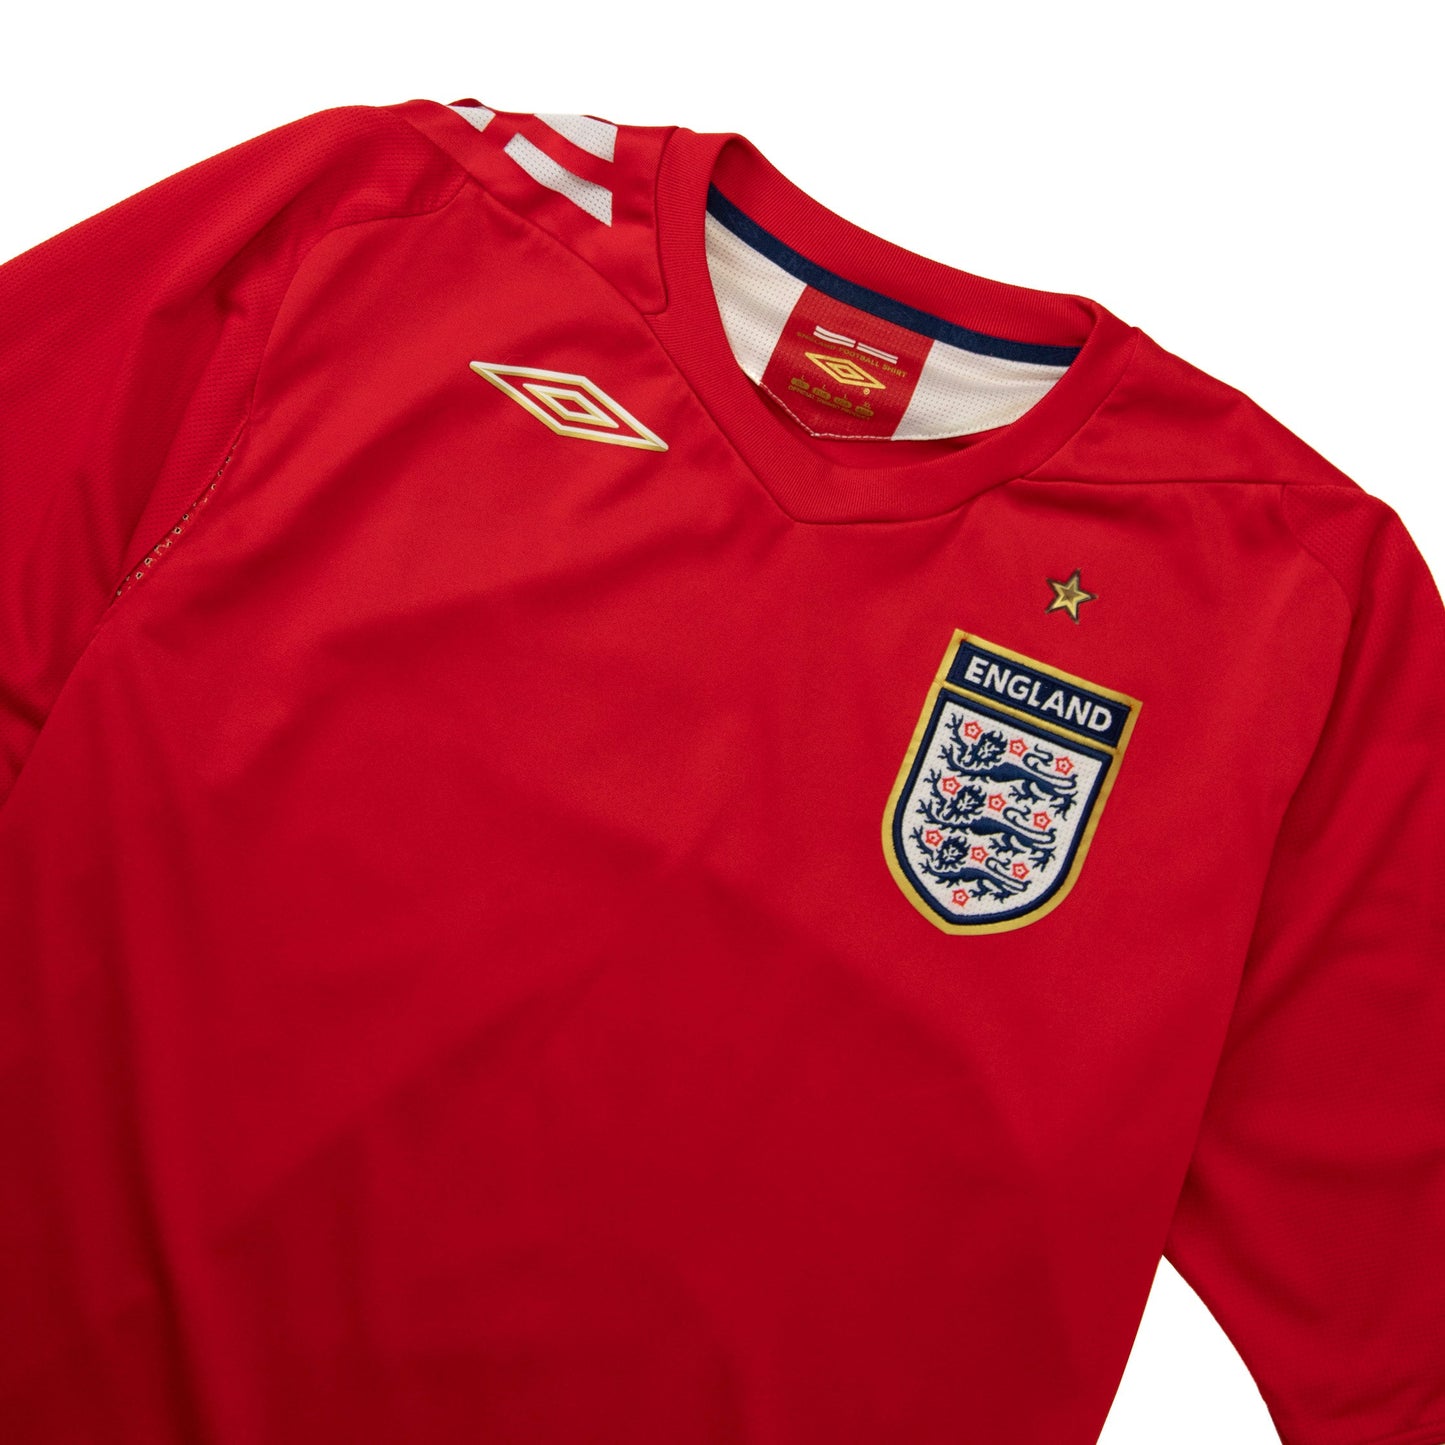 2005/06 England x Umbro Away Football Shirt